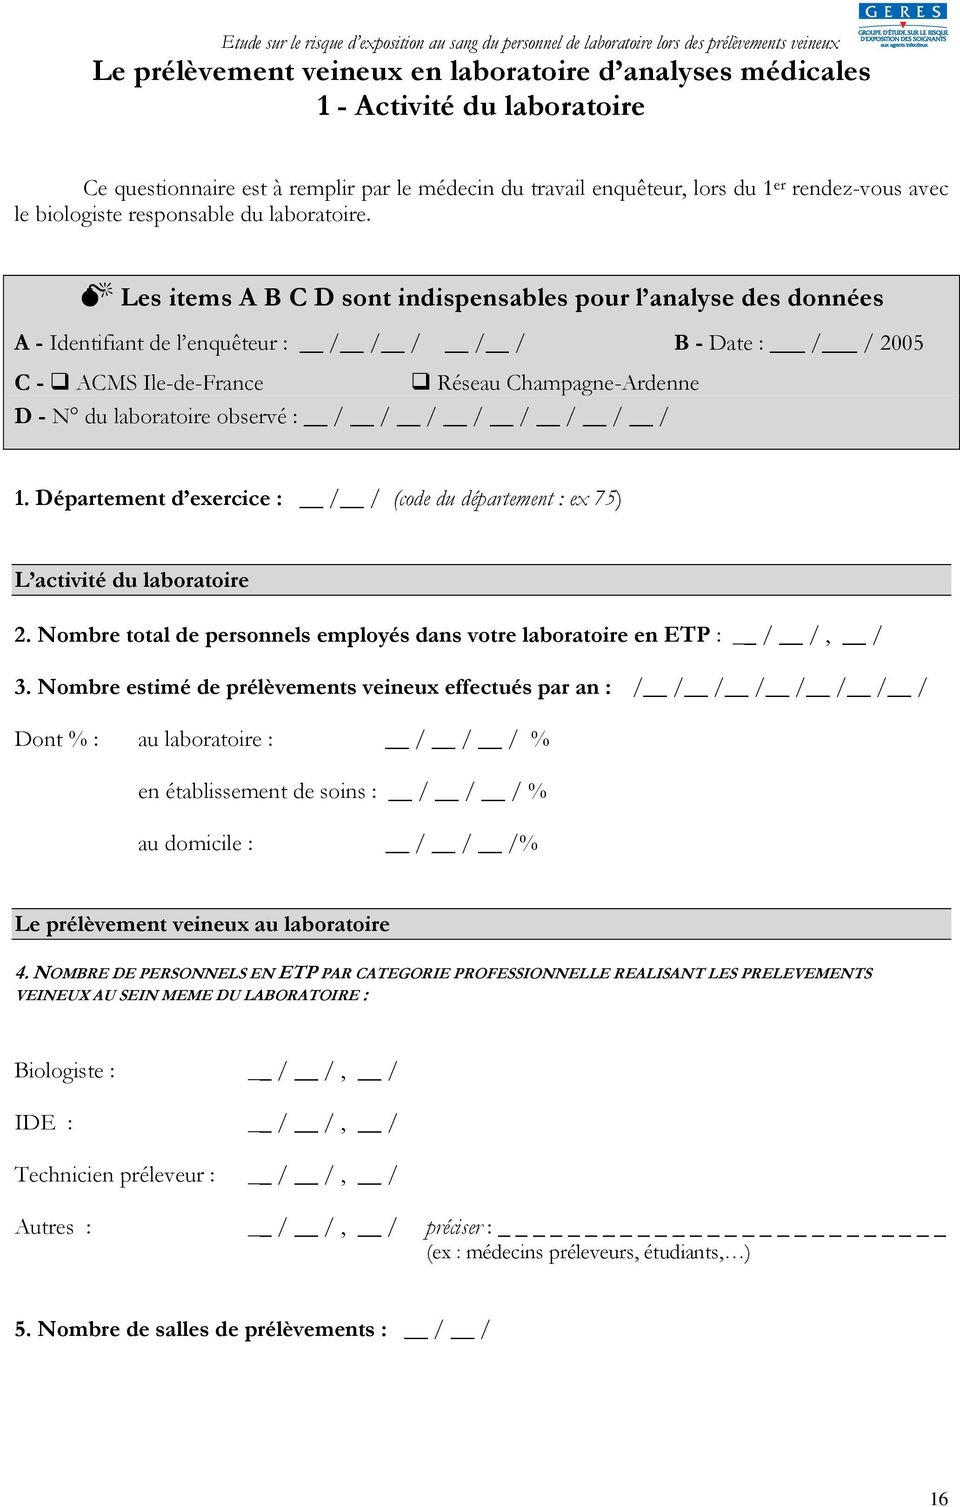 Les items A B C D sont indispensables pour l analyse des données A - Identifiant de l enquêteur : / / / / / B - Date : / / 2005 C - ACMS Ile-de-France Réseau Champagne-Ardenne D - N du laboratoire